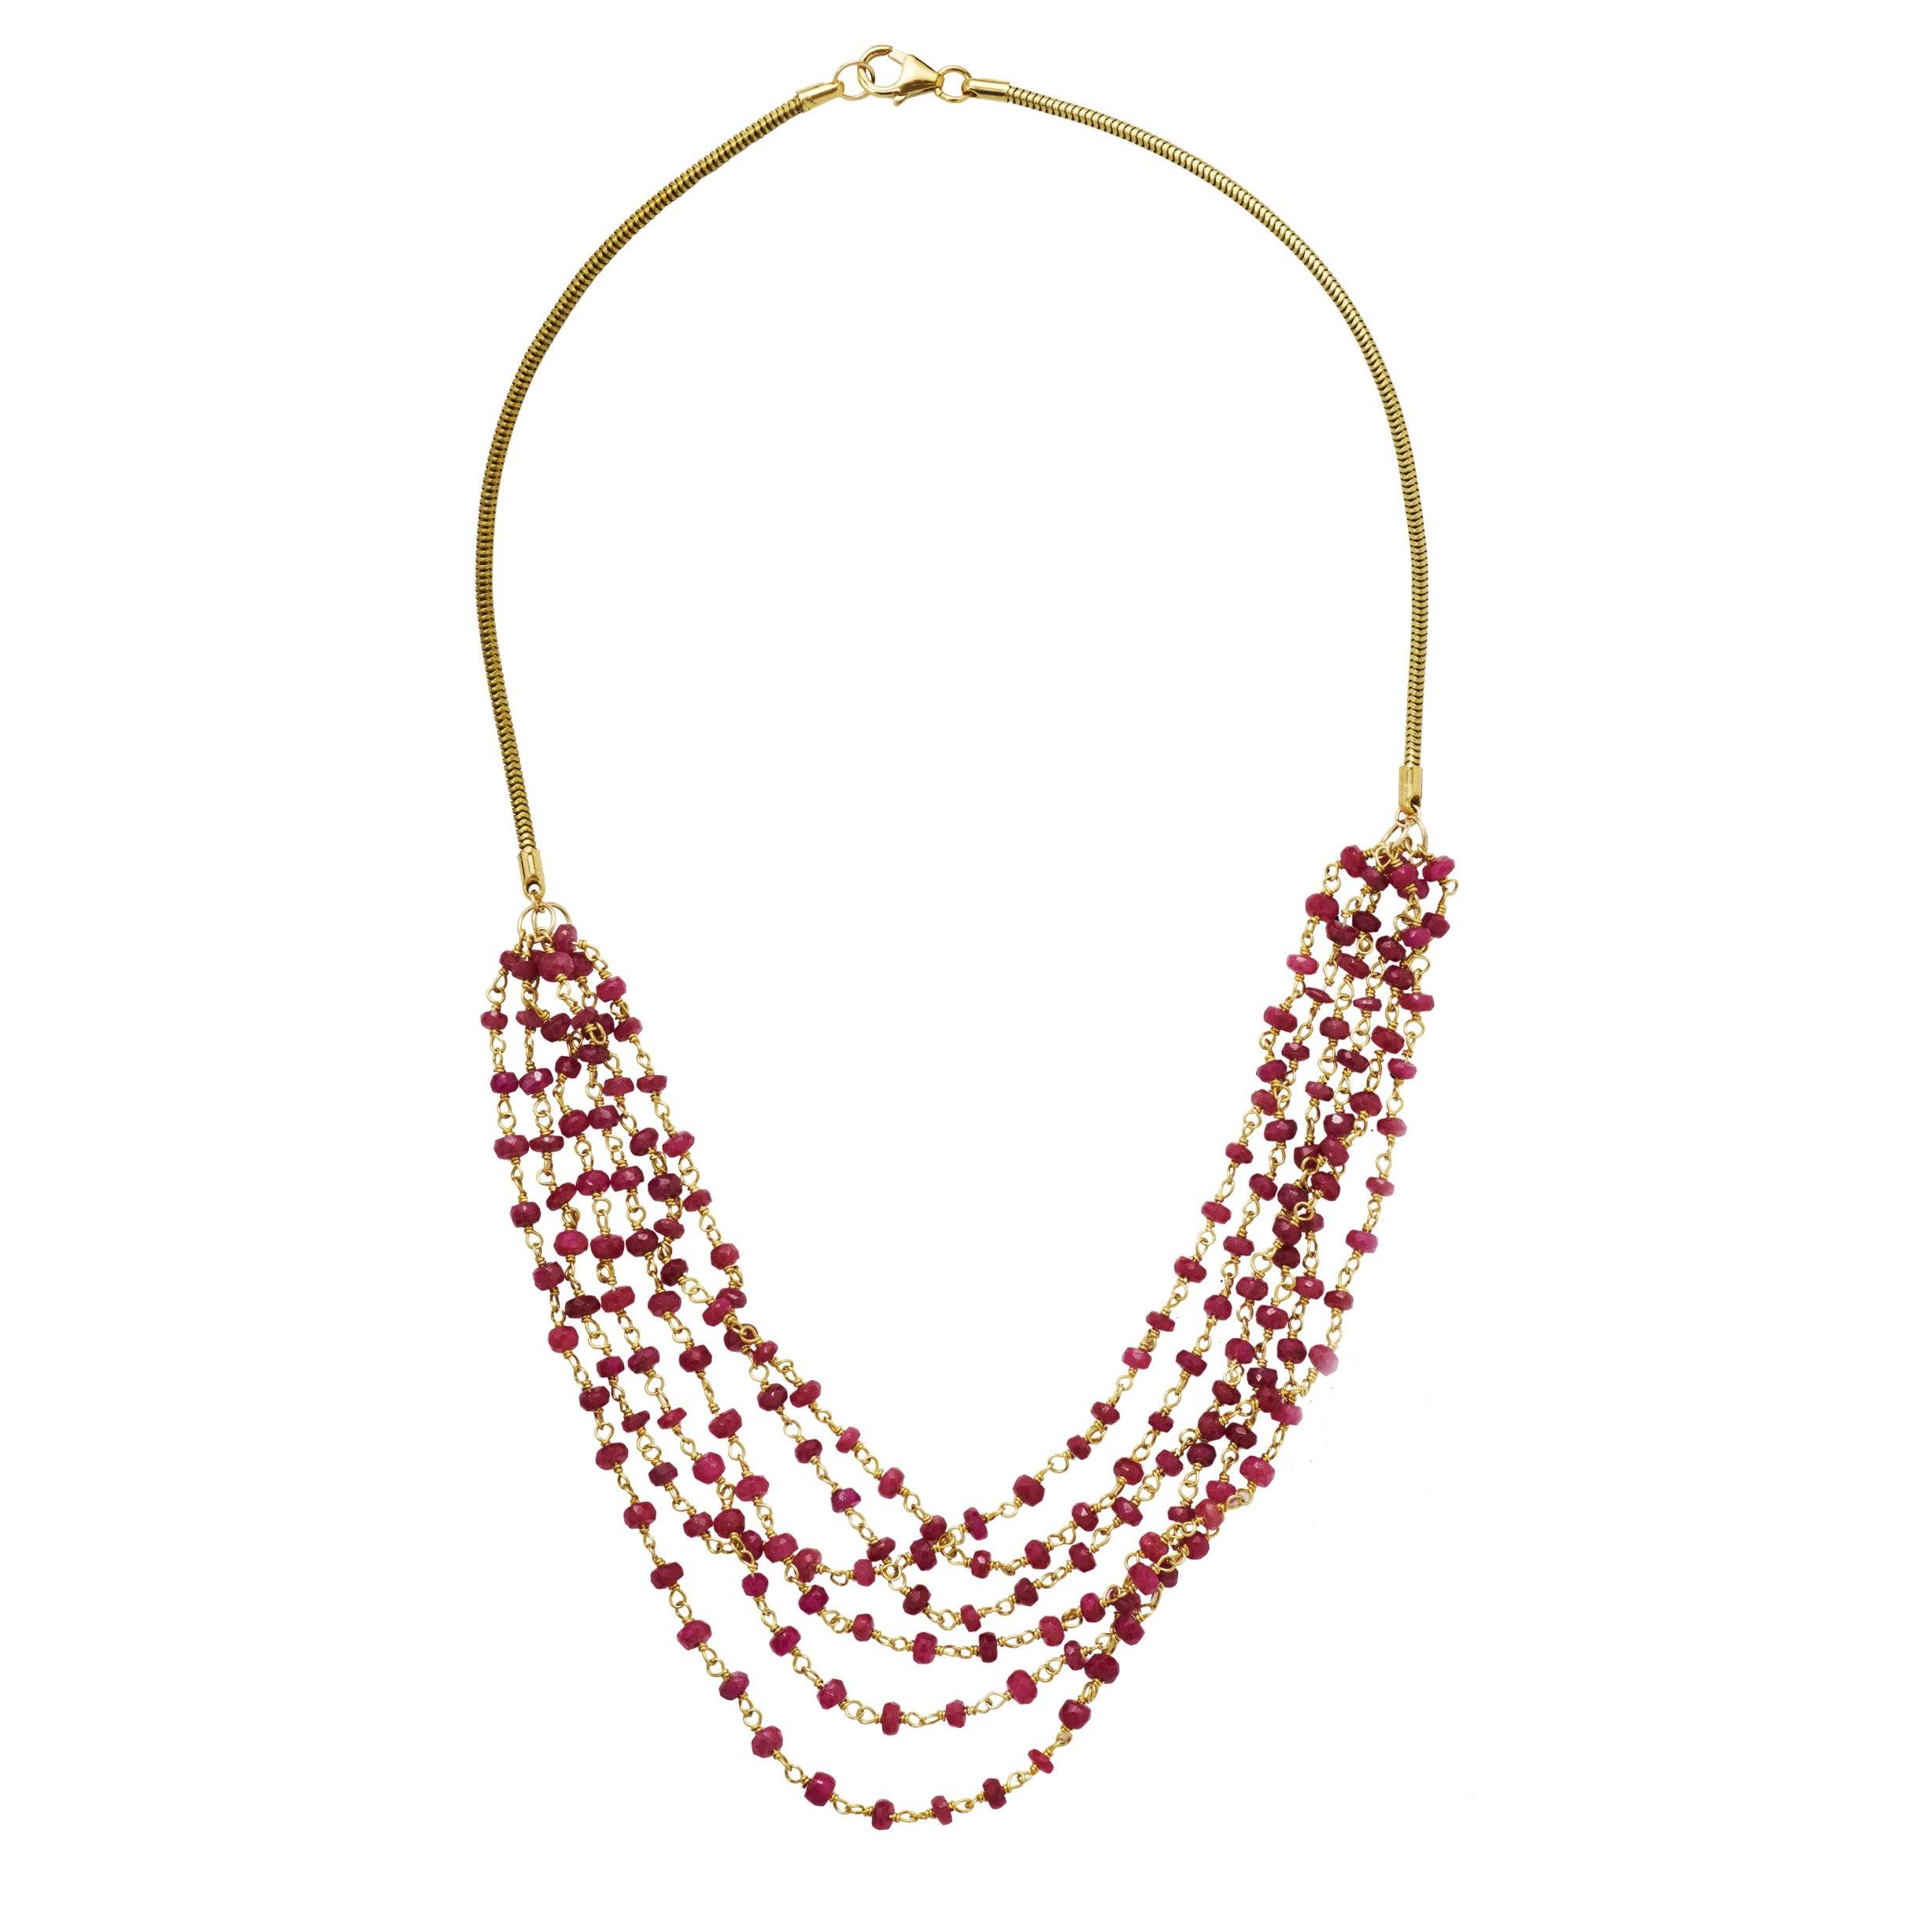 Chloe Necklace – Flaca Jewelry, Inc.